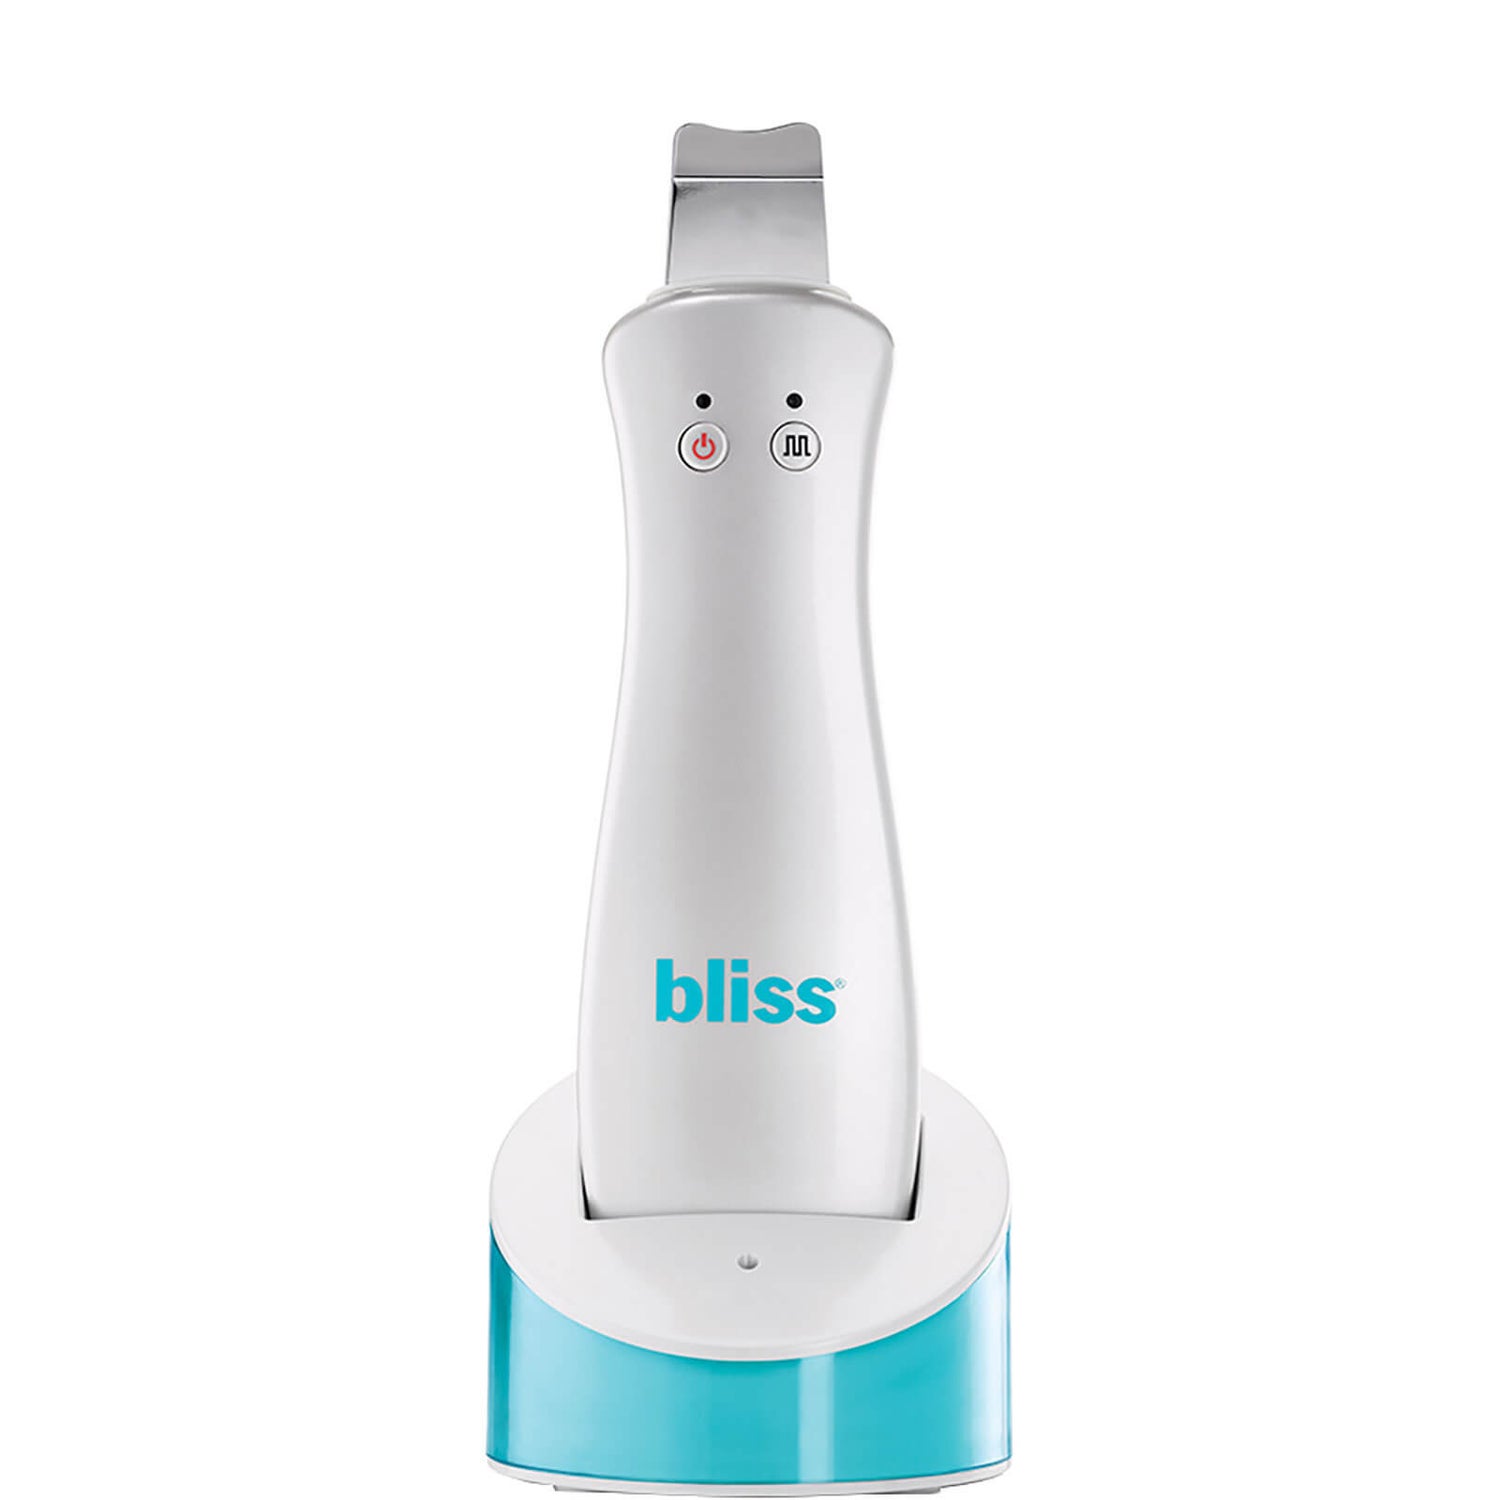 bliss 'Pore'-Fector Gadget -huokosten puhdistuslaite ja kasvovesi (2 tuotetta)